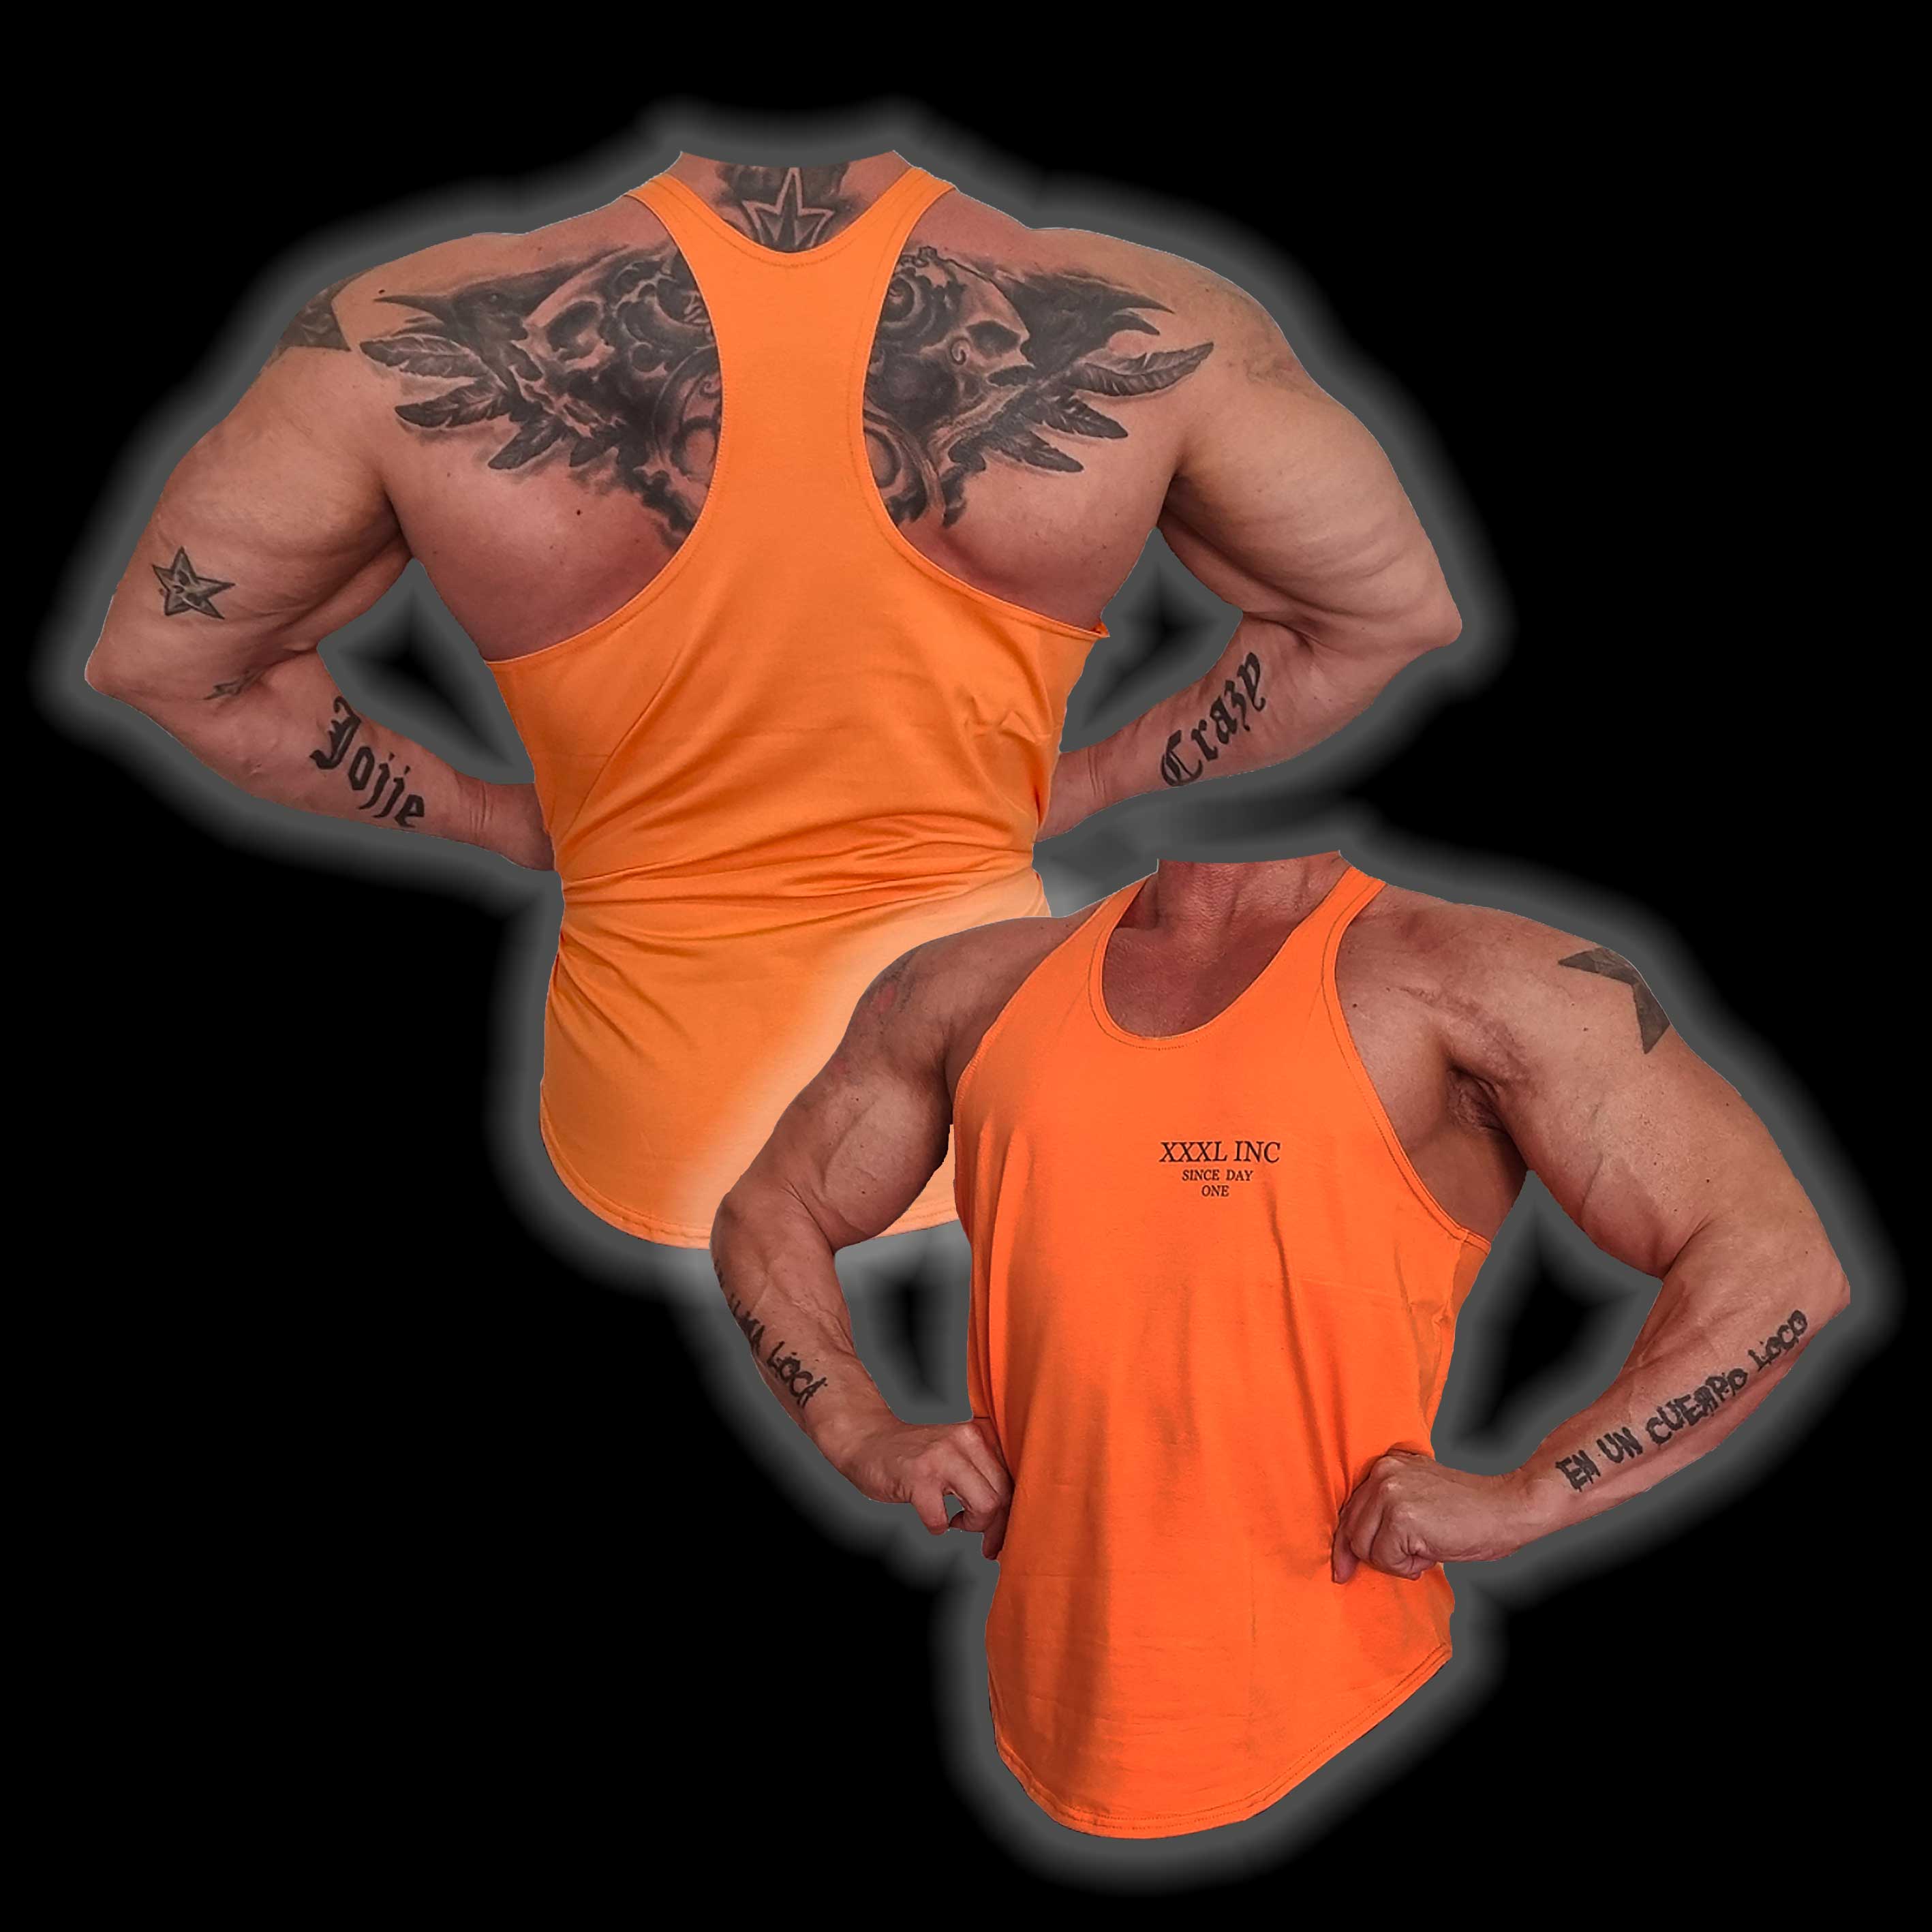 "XXXL Inc" Classic Muscle Vest - Sunburst Orange